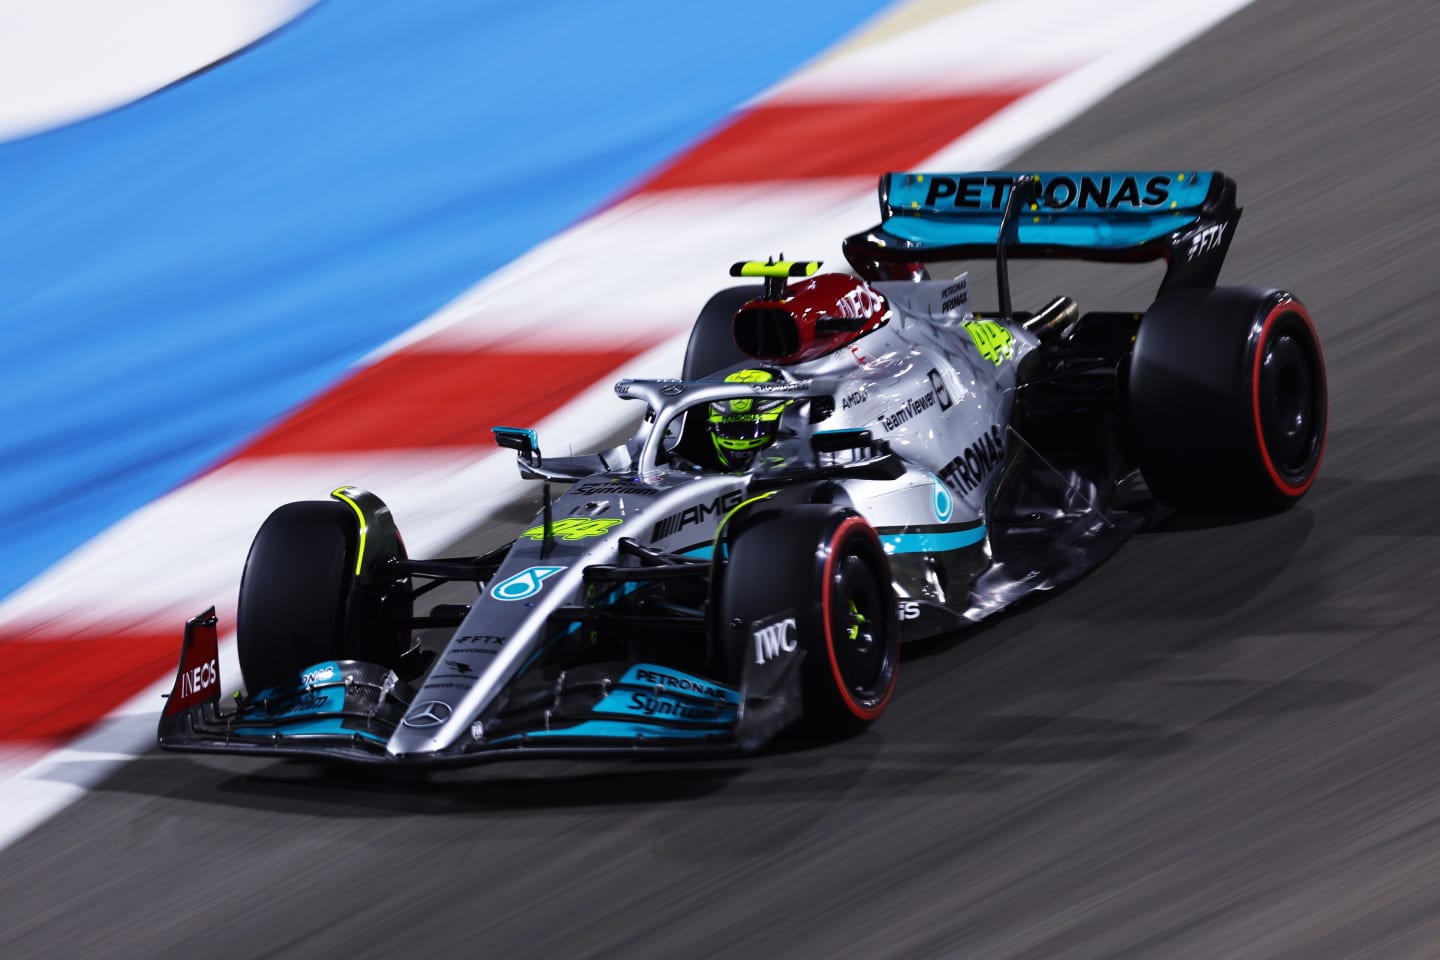 BAHRAIN, BAHRAIN - MARCH 19: Lewis Hamilton of Great Britain driving the (44) Mercedes AMG Petronas